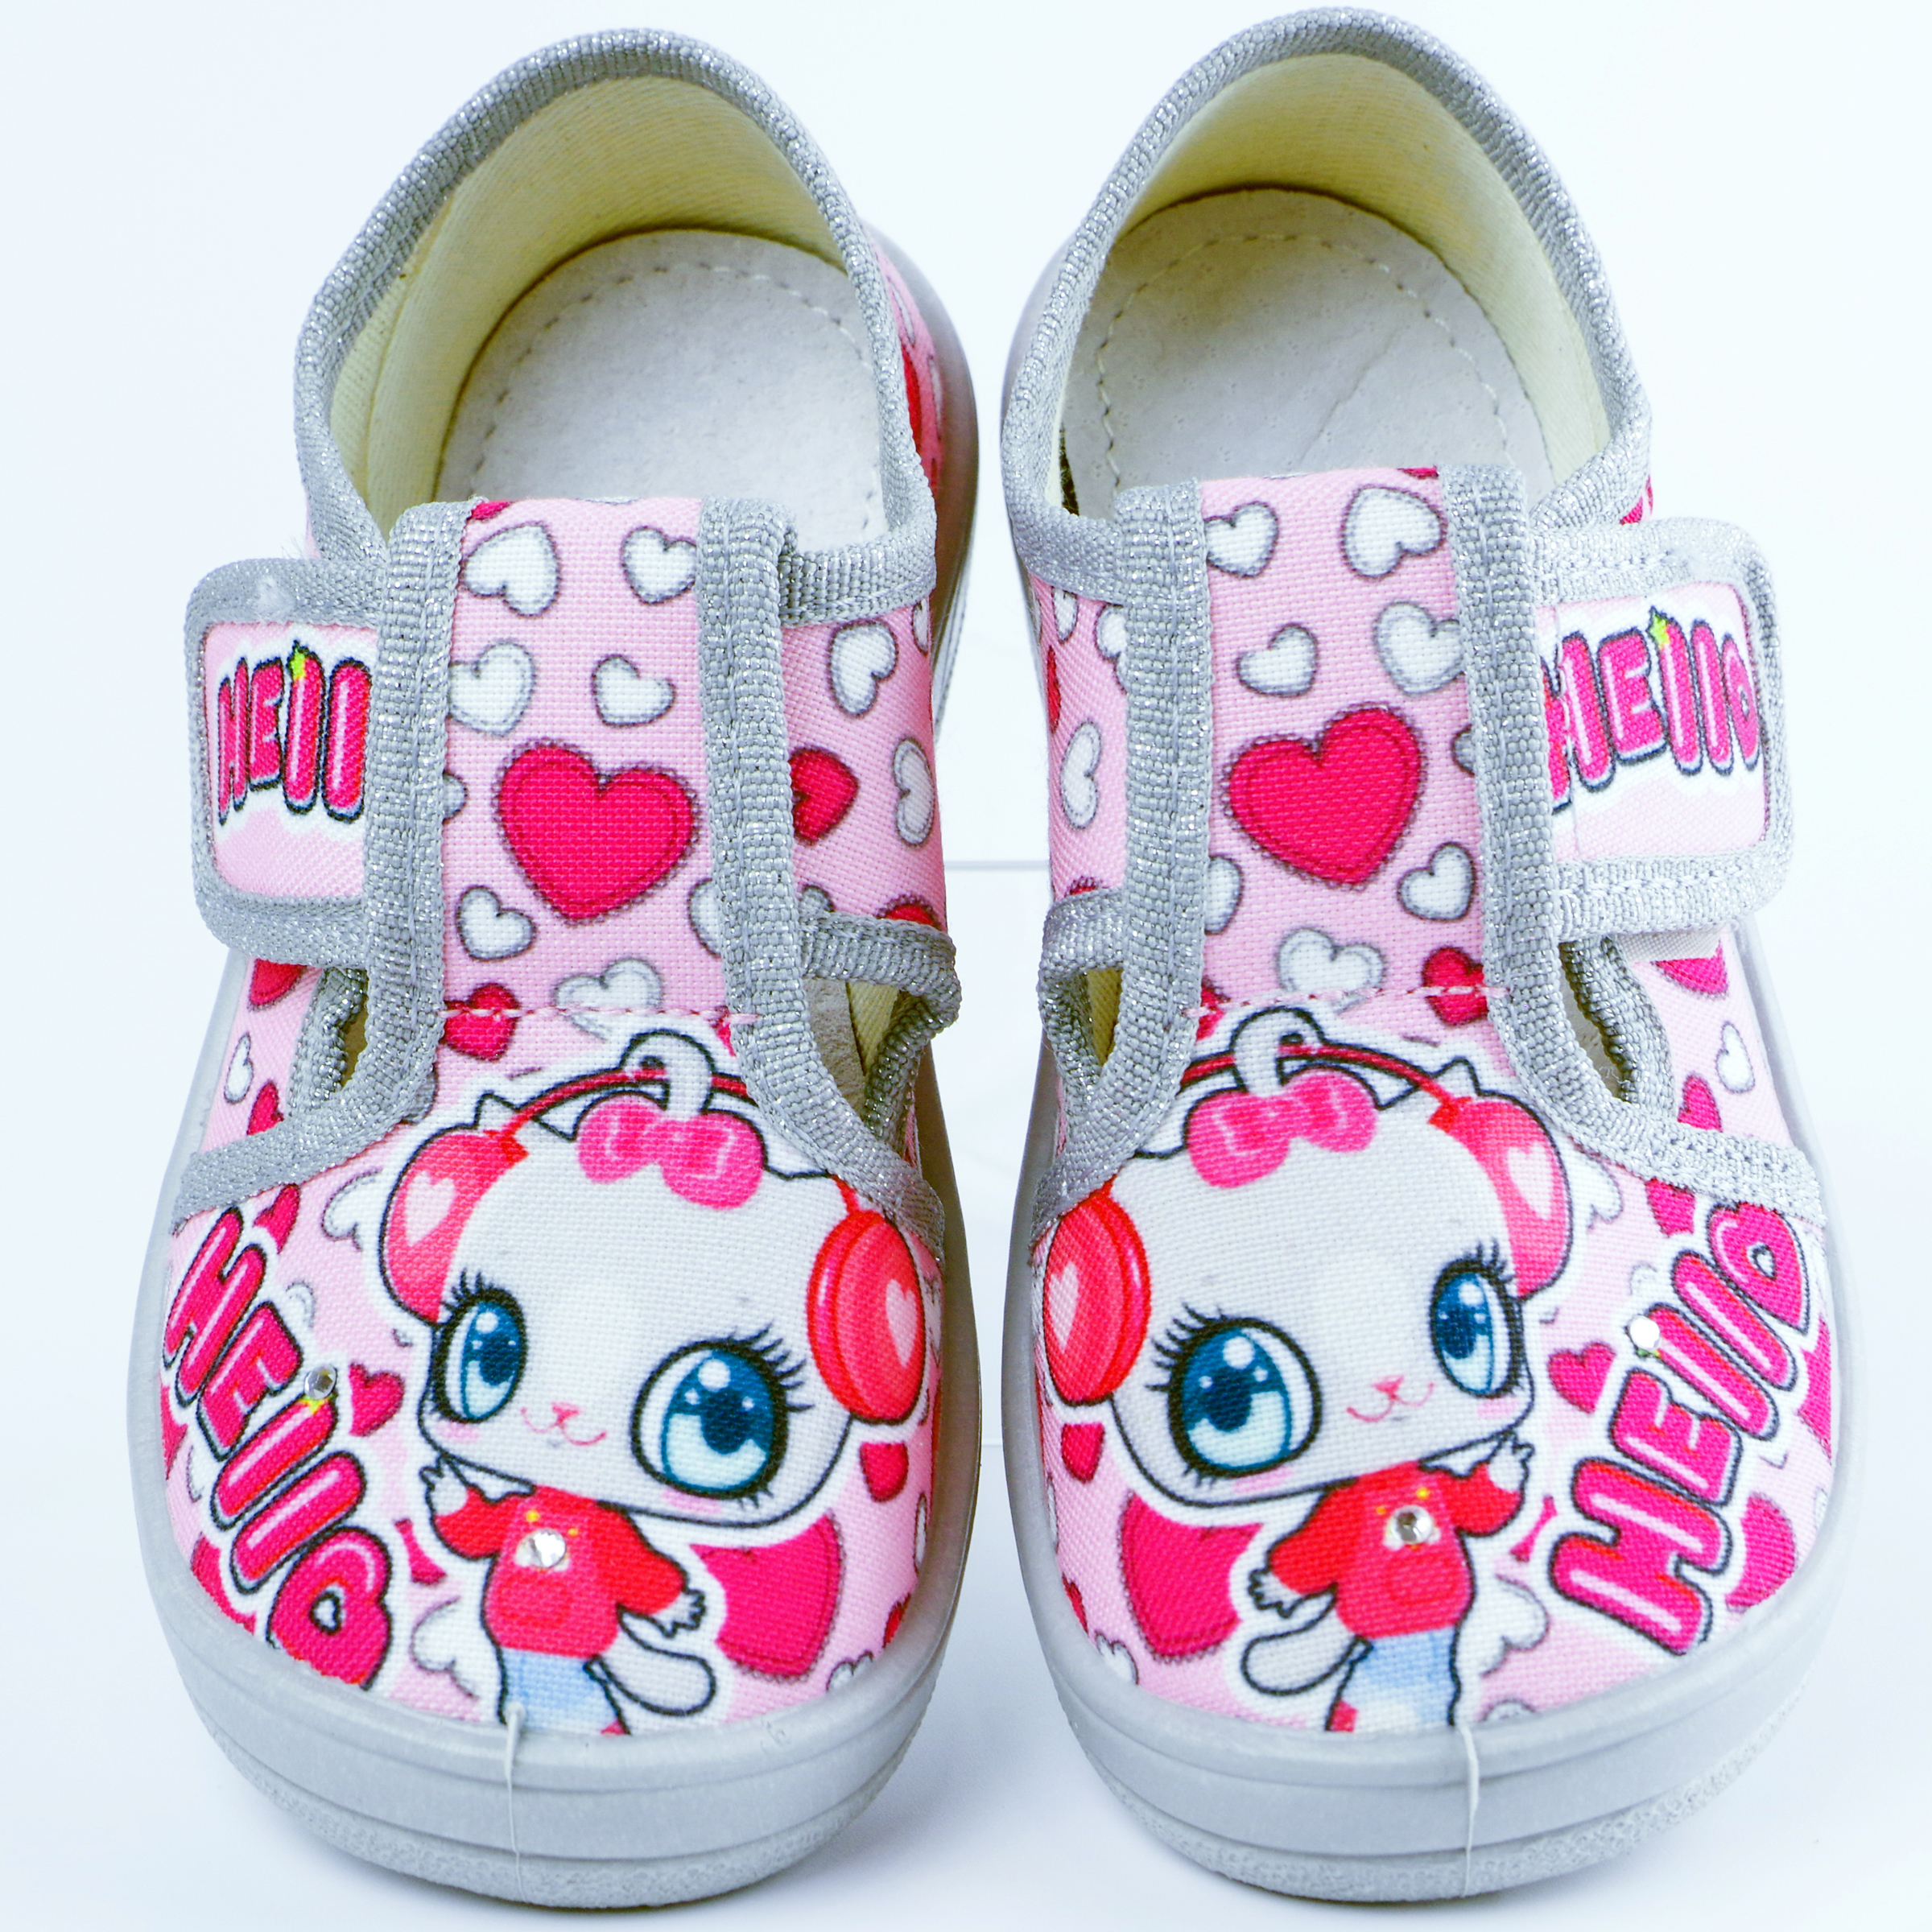 Текстильная обувь для девочек Тапочки Галя Hello (2127) цвет Розовый 24-30 размеры – Sole Kids. Фото 2